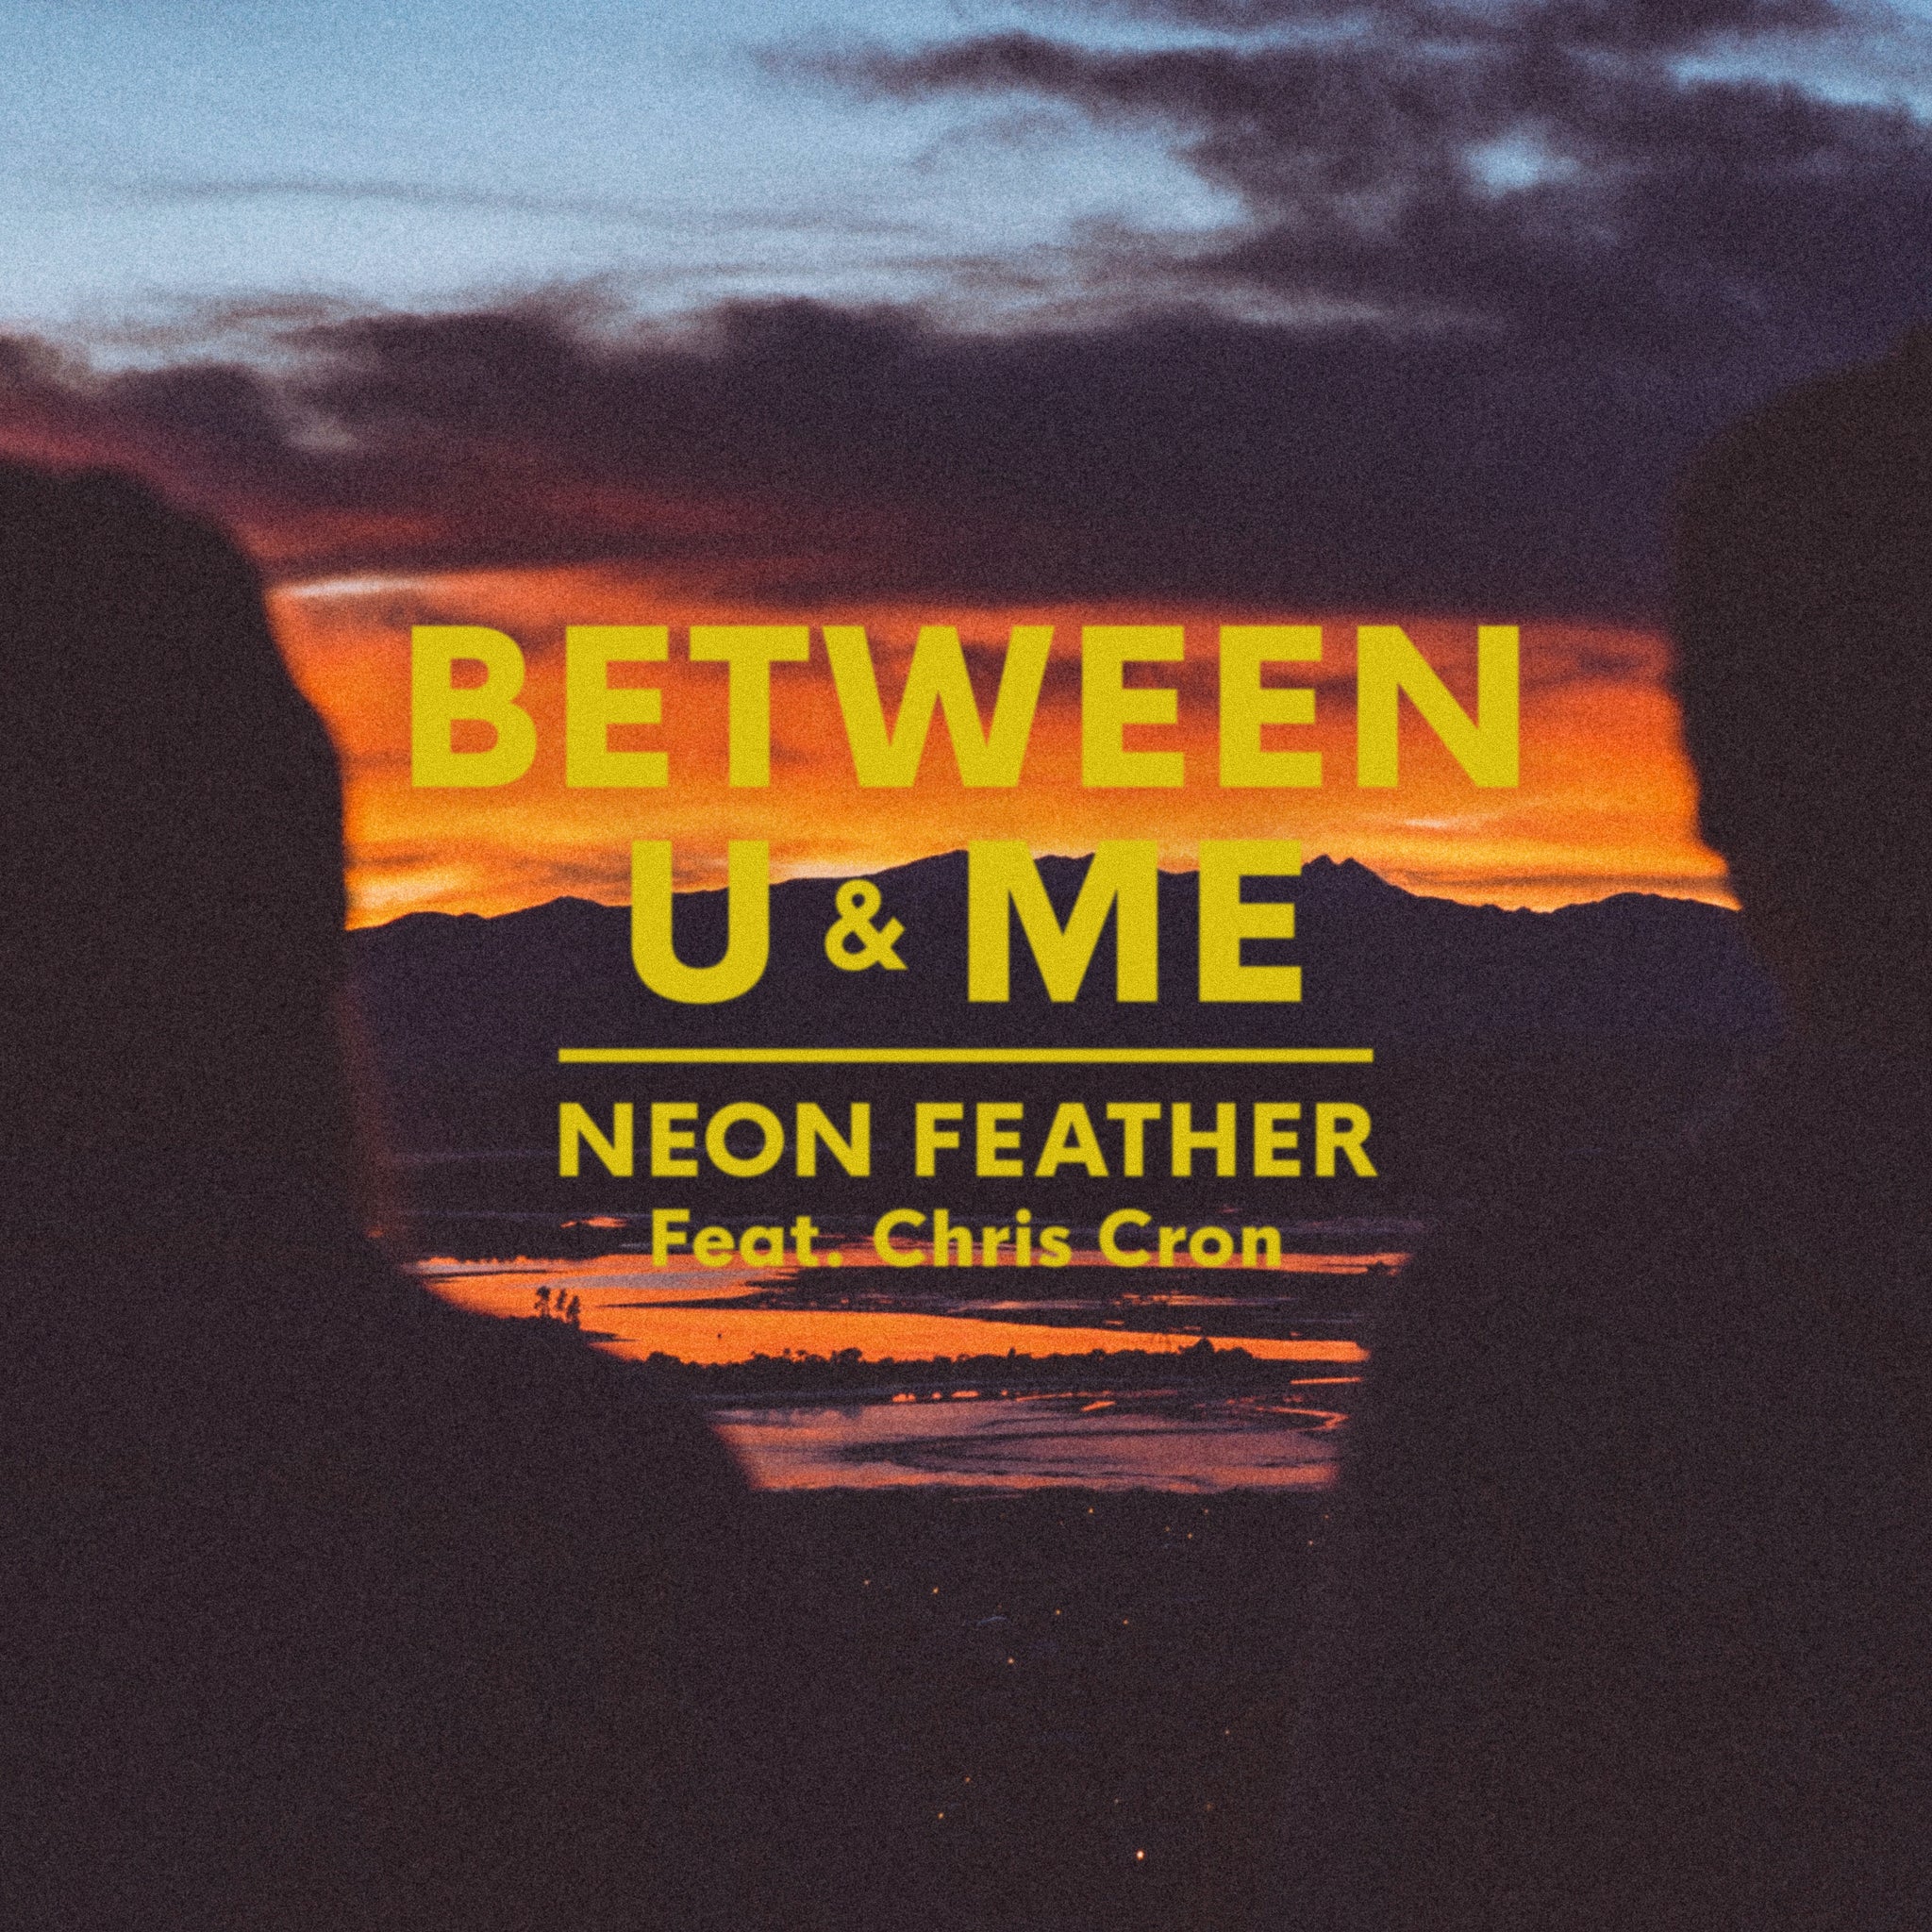 Between U & Me (Digital Single)